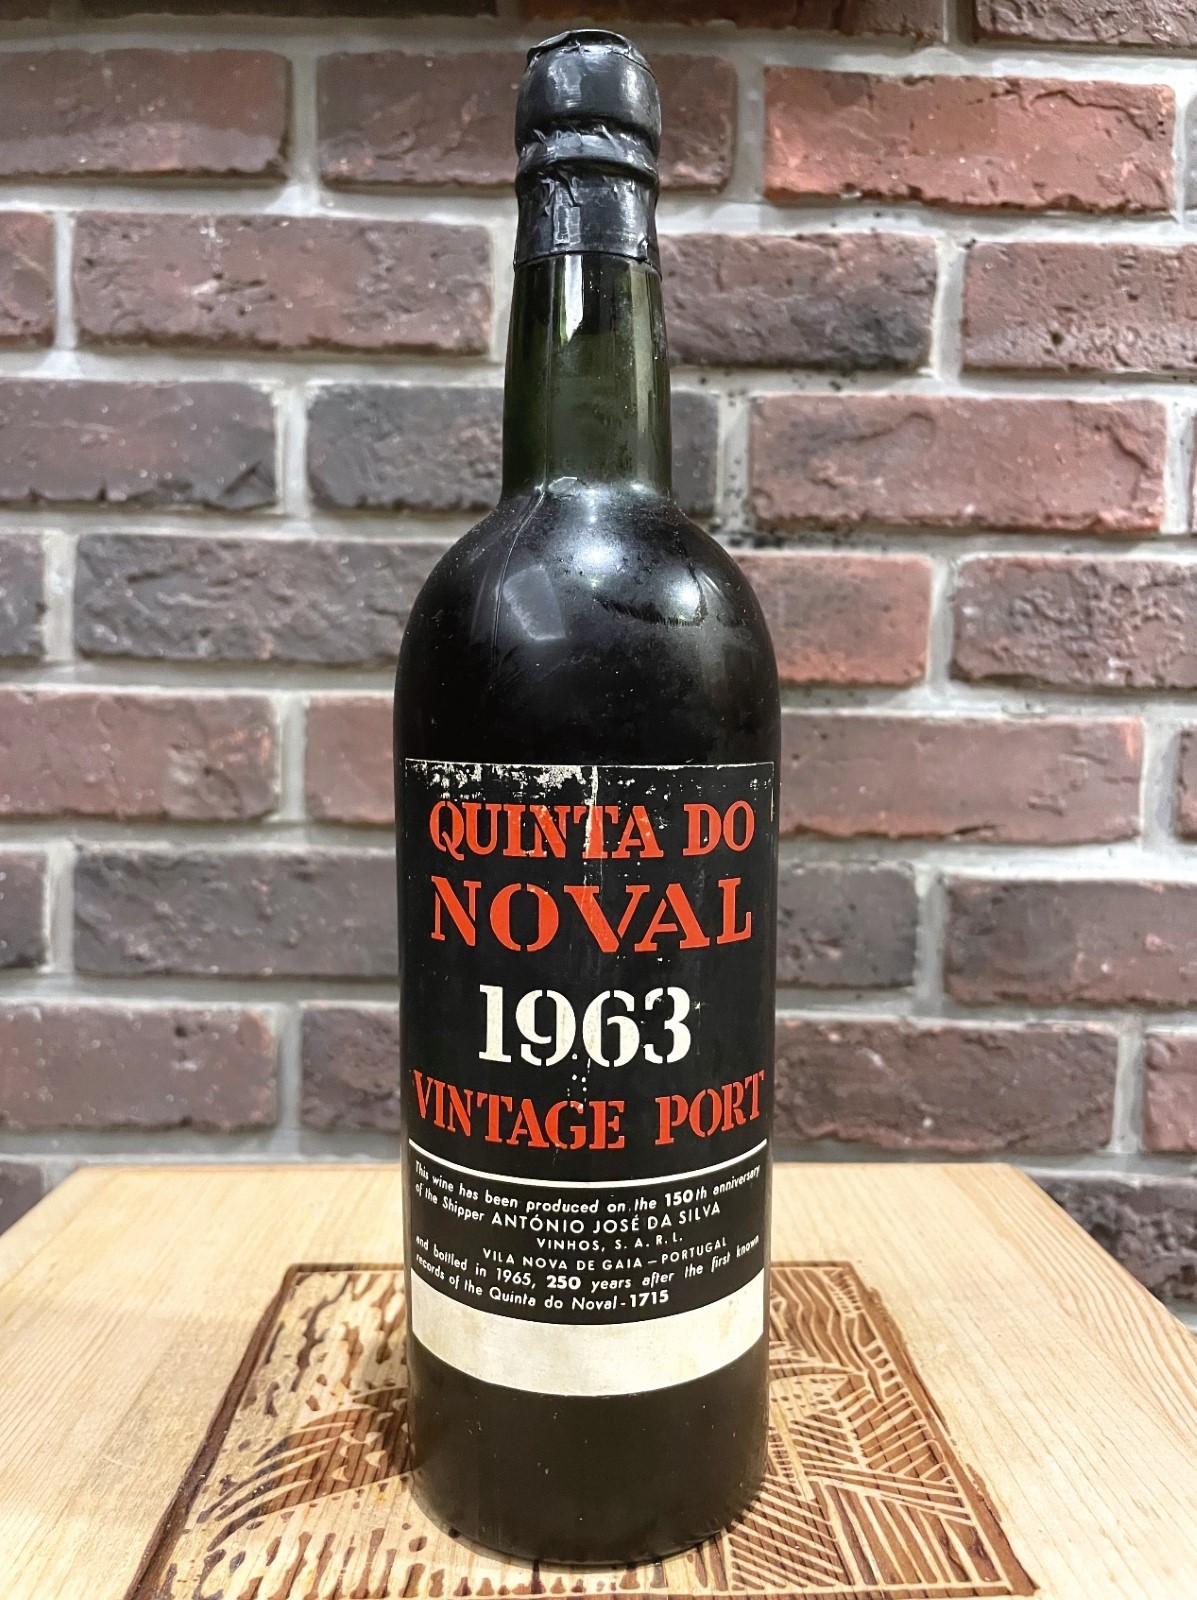 諾瓦酒莊1963年份波特酒是一款最好的波特酒之一，帶有波特酒中常有的蜜餞、濃咖啡、黑莓、甘草、仙楂、百合花瓣的氣息。（圖片來源：時報出版提供）